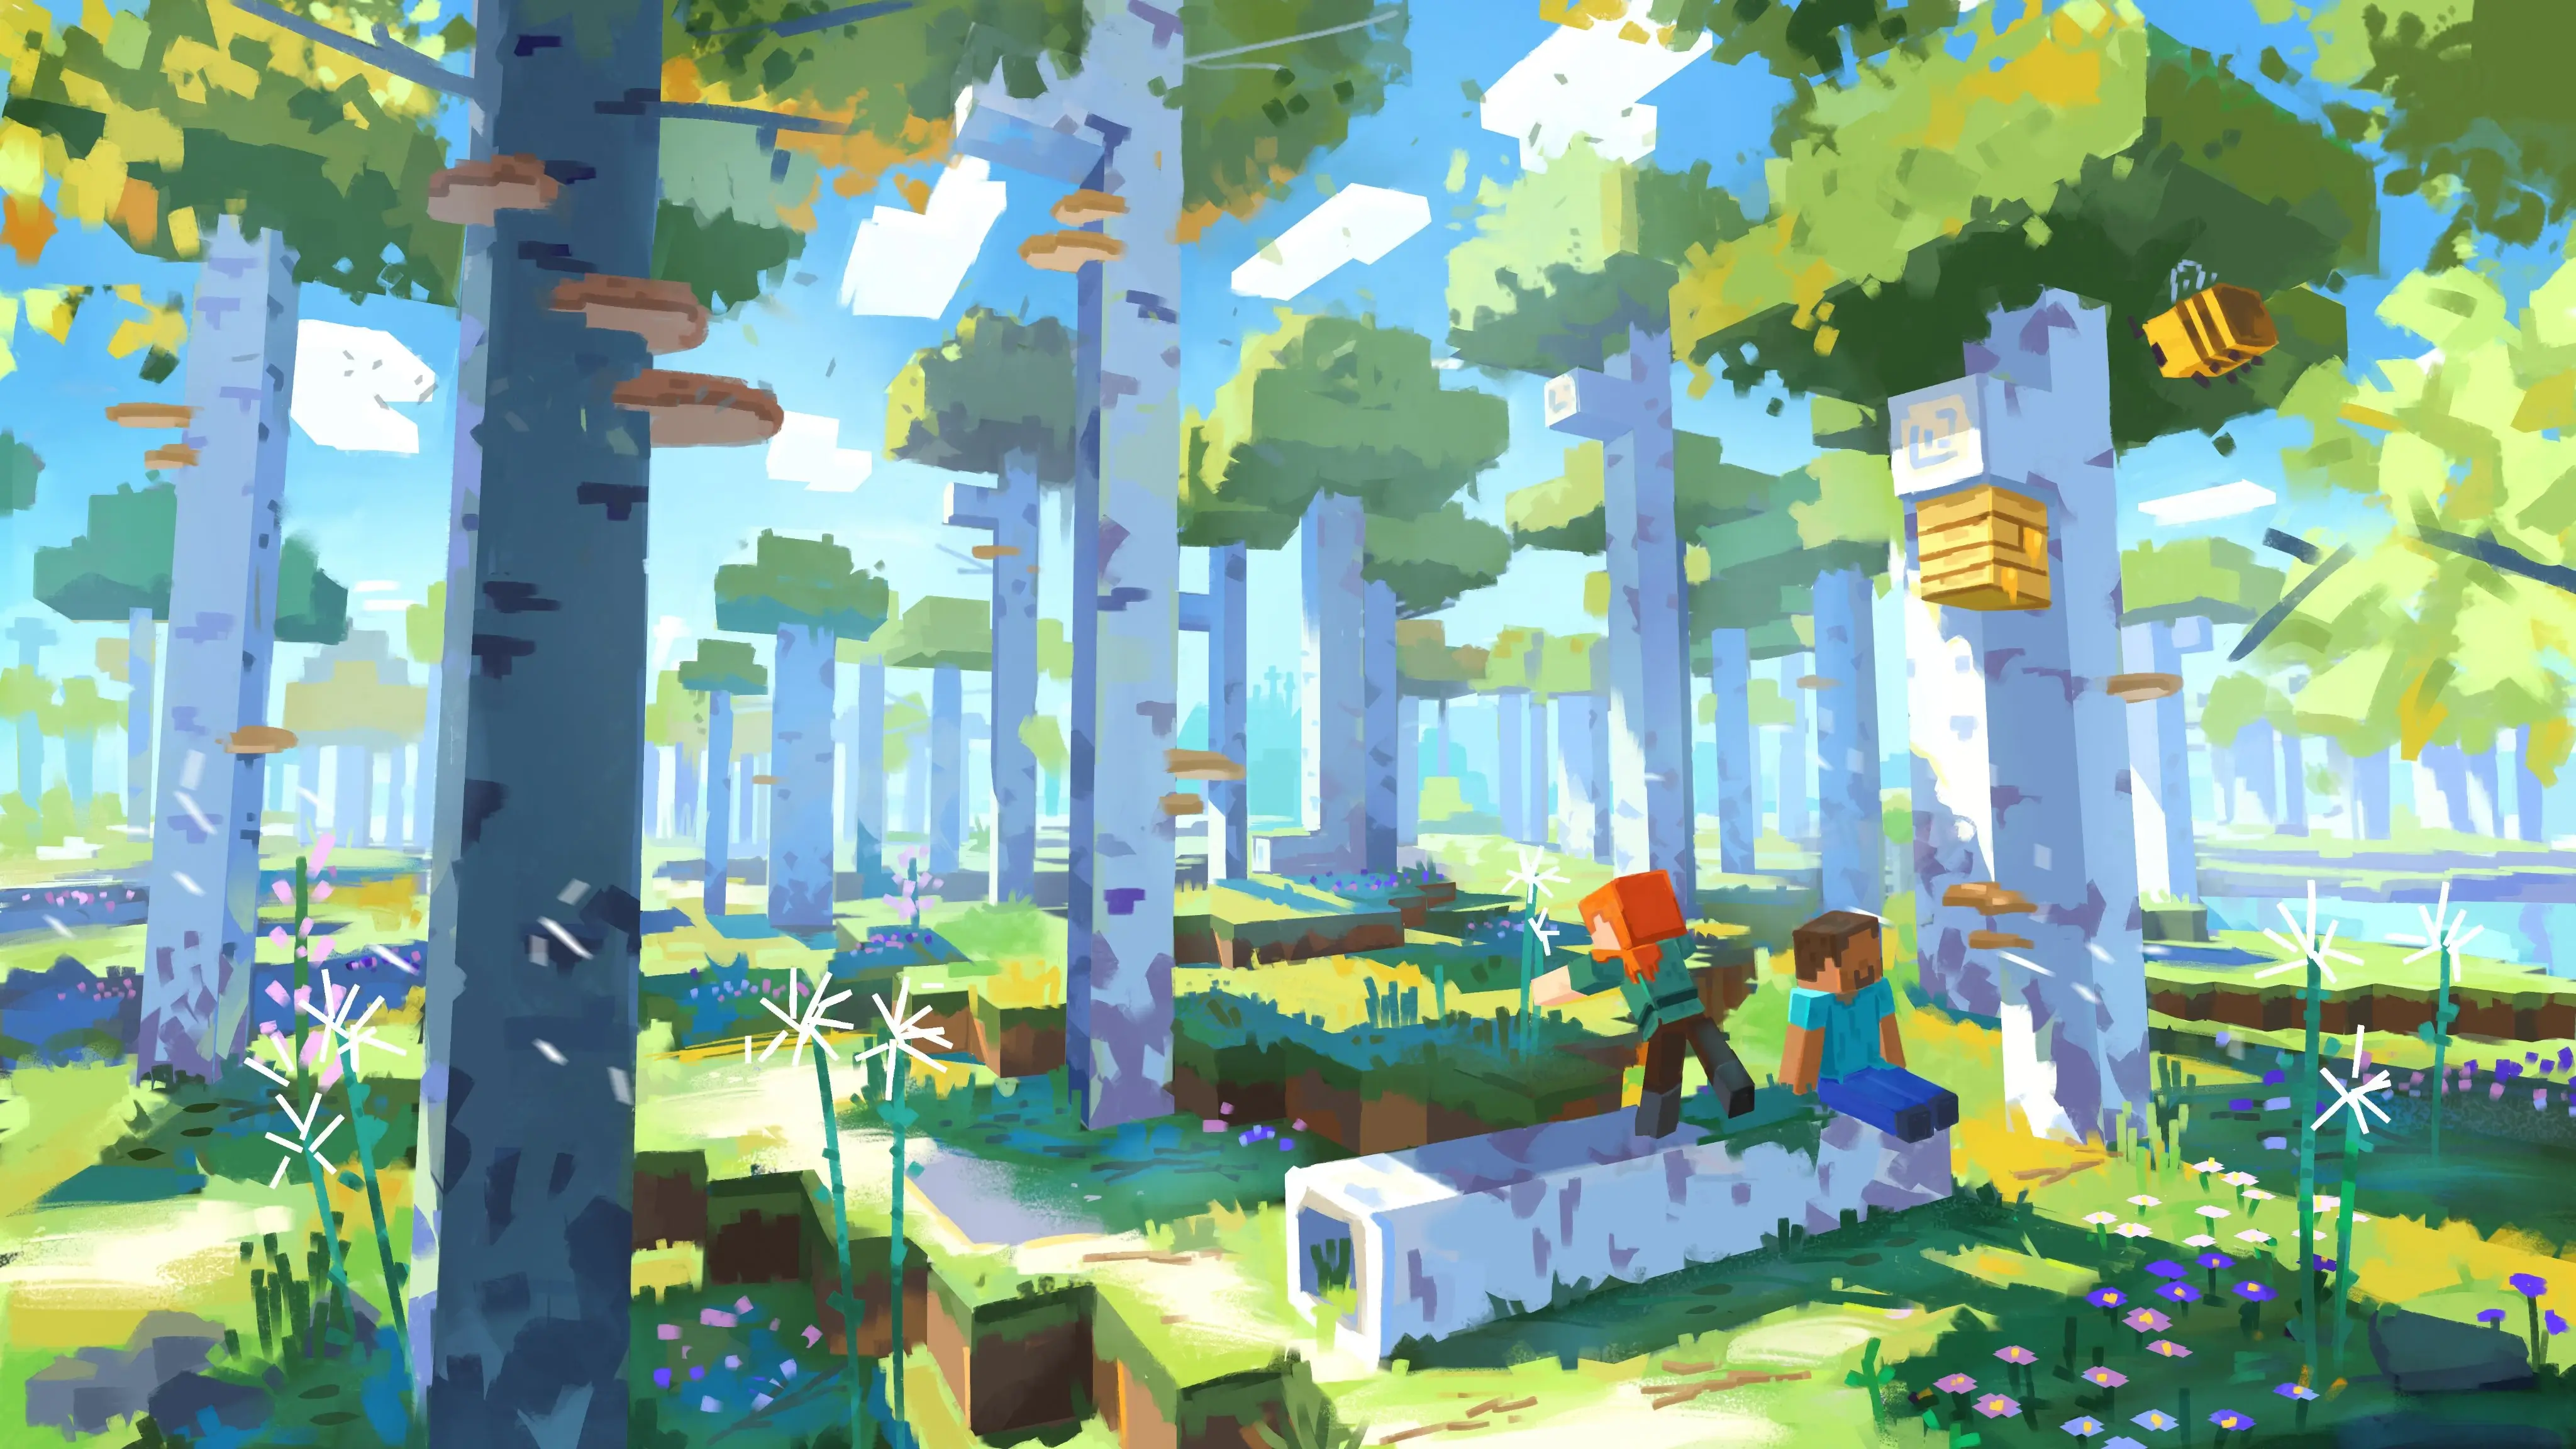 Birch forest concept art from Minecraft